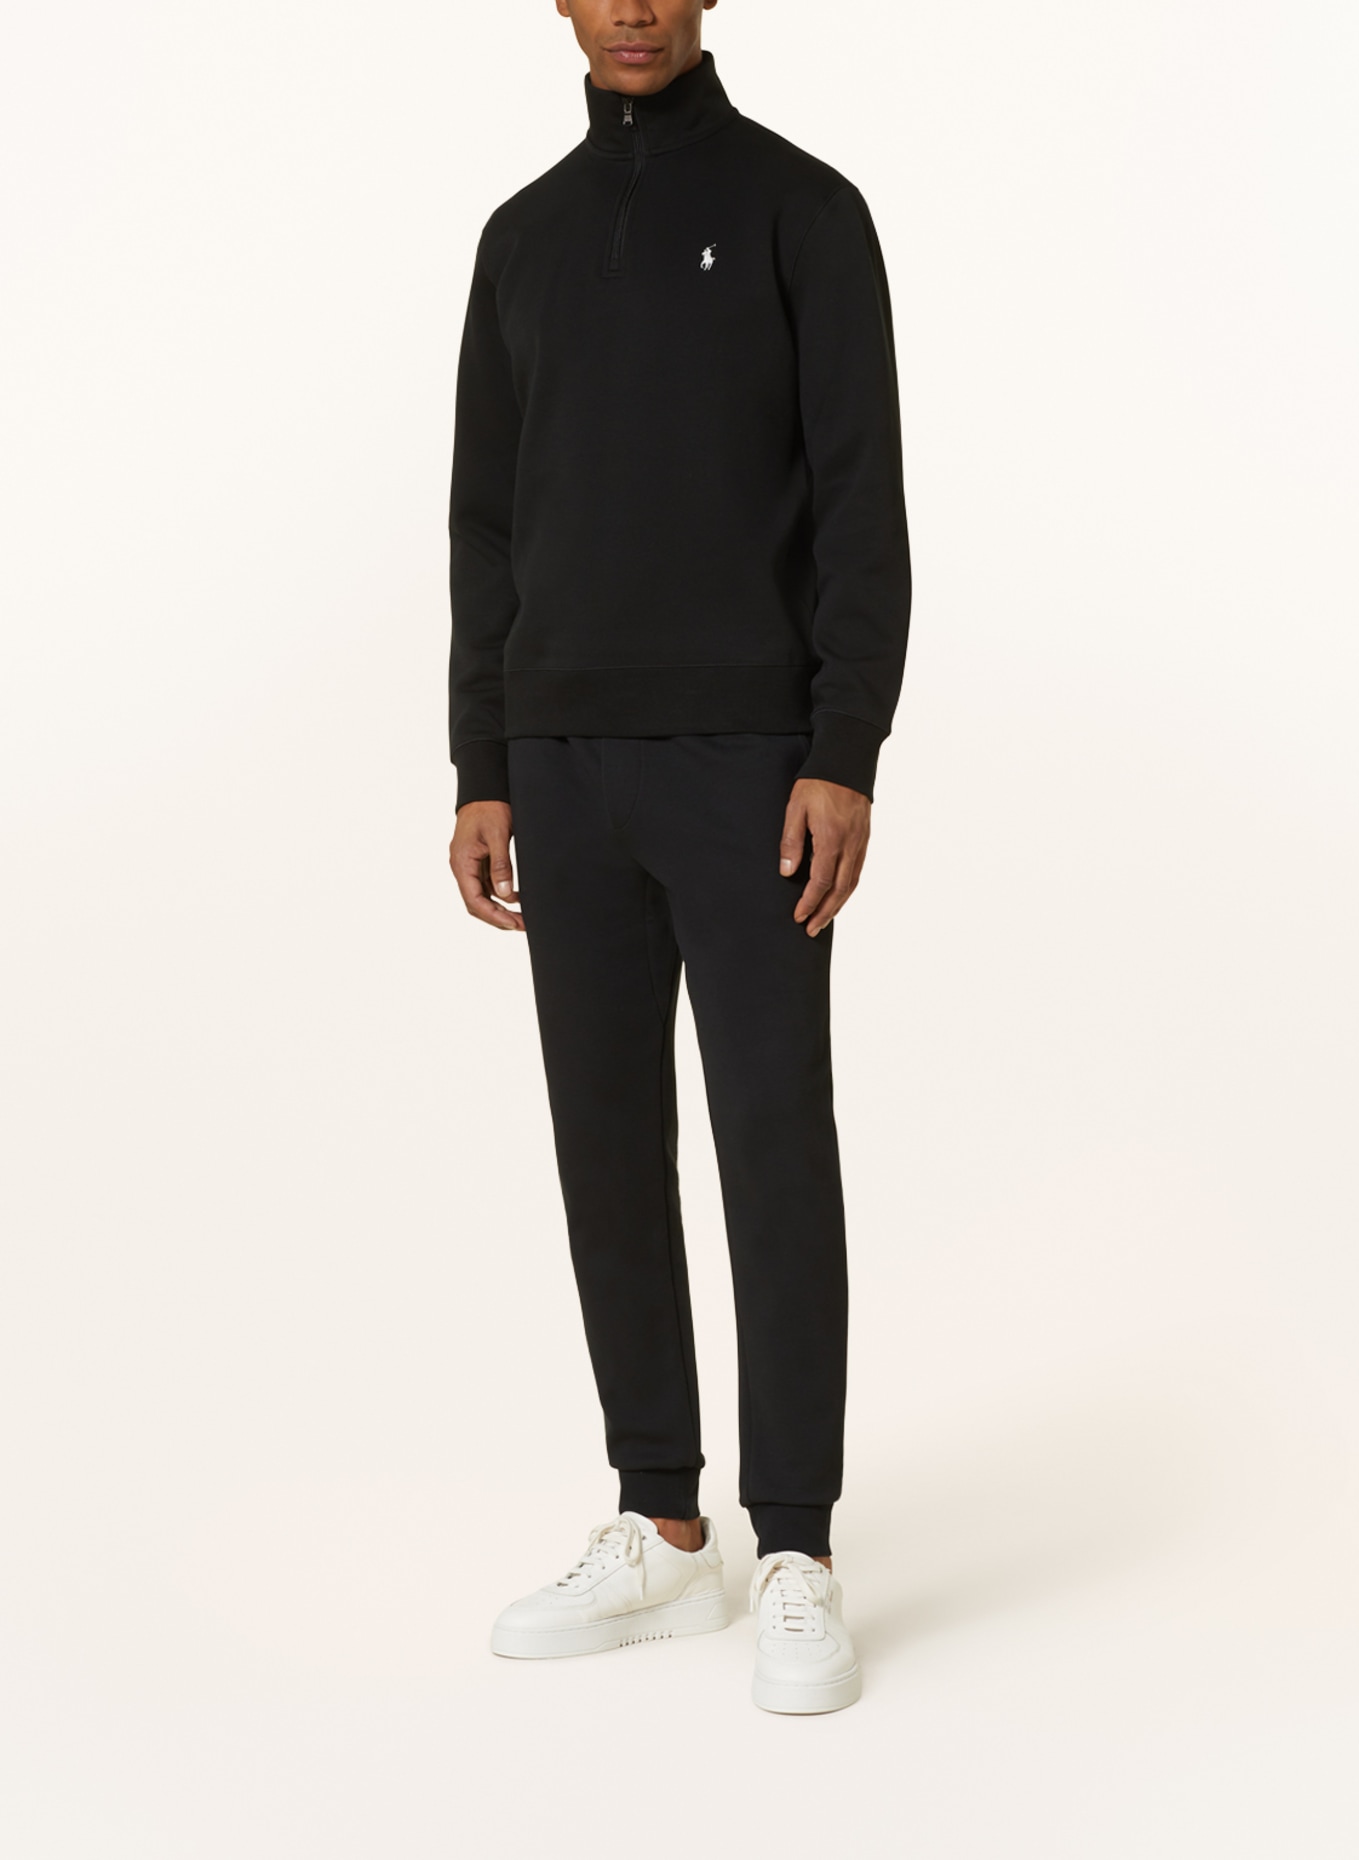 POLO RALPH LAUREN Jersey half-zip sweater, Color: BLACK (Image 2)